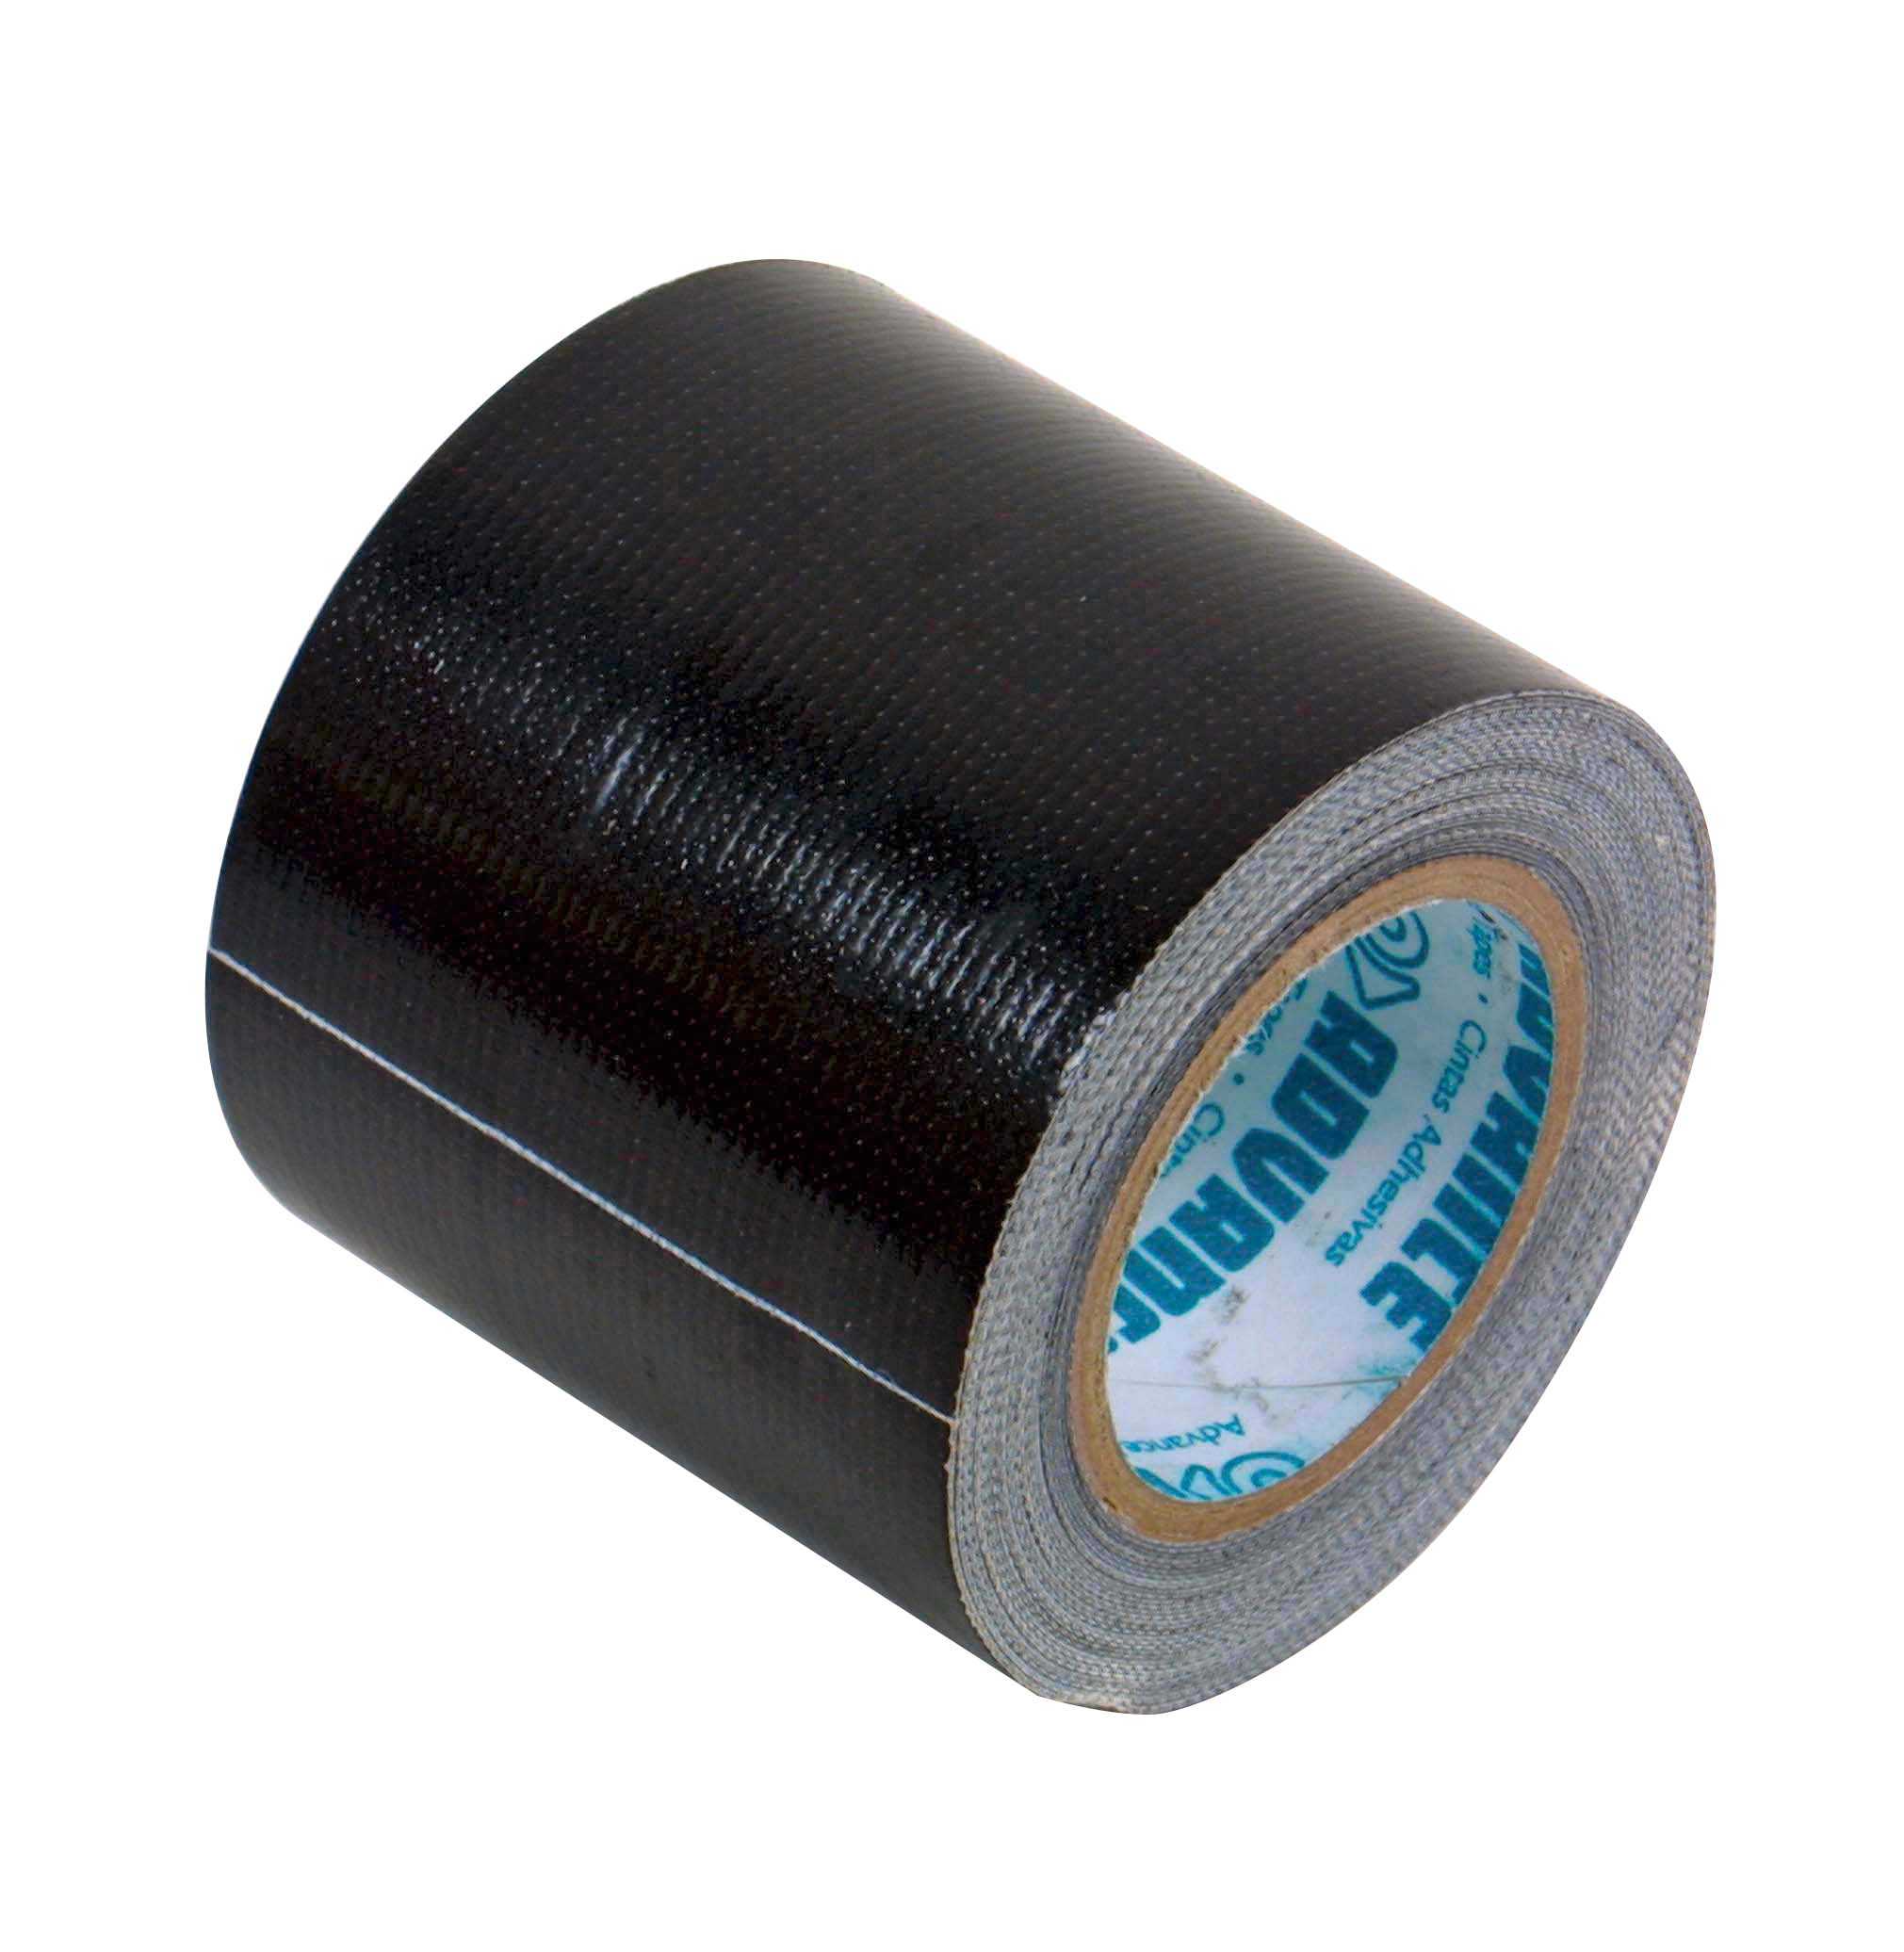 Reparatur Tape Gewebeband 5m schwarz